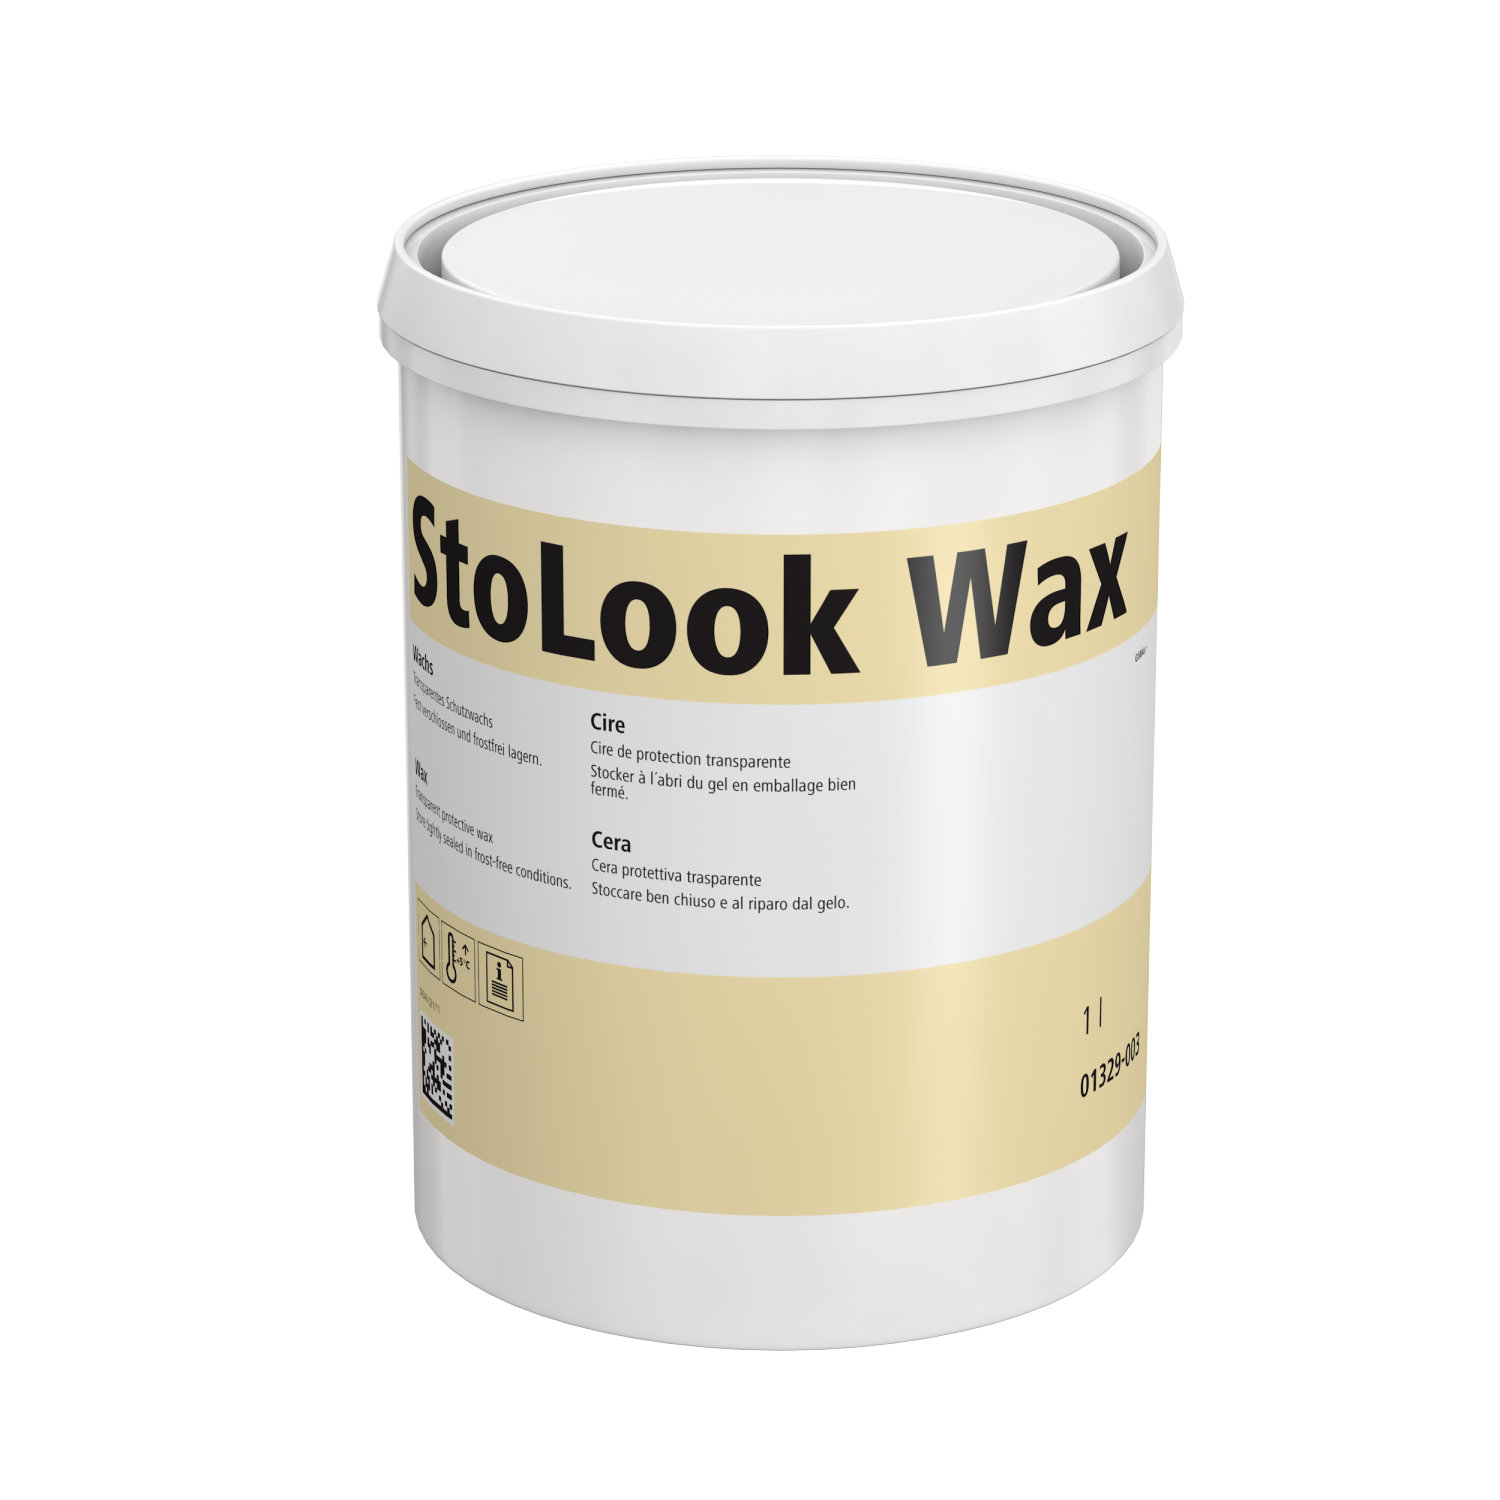 StoLookWax-1.jpeg